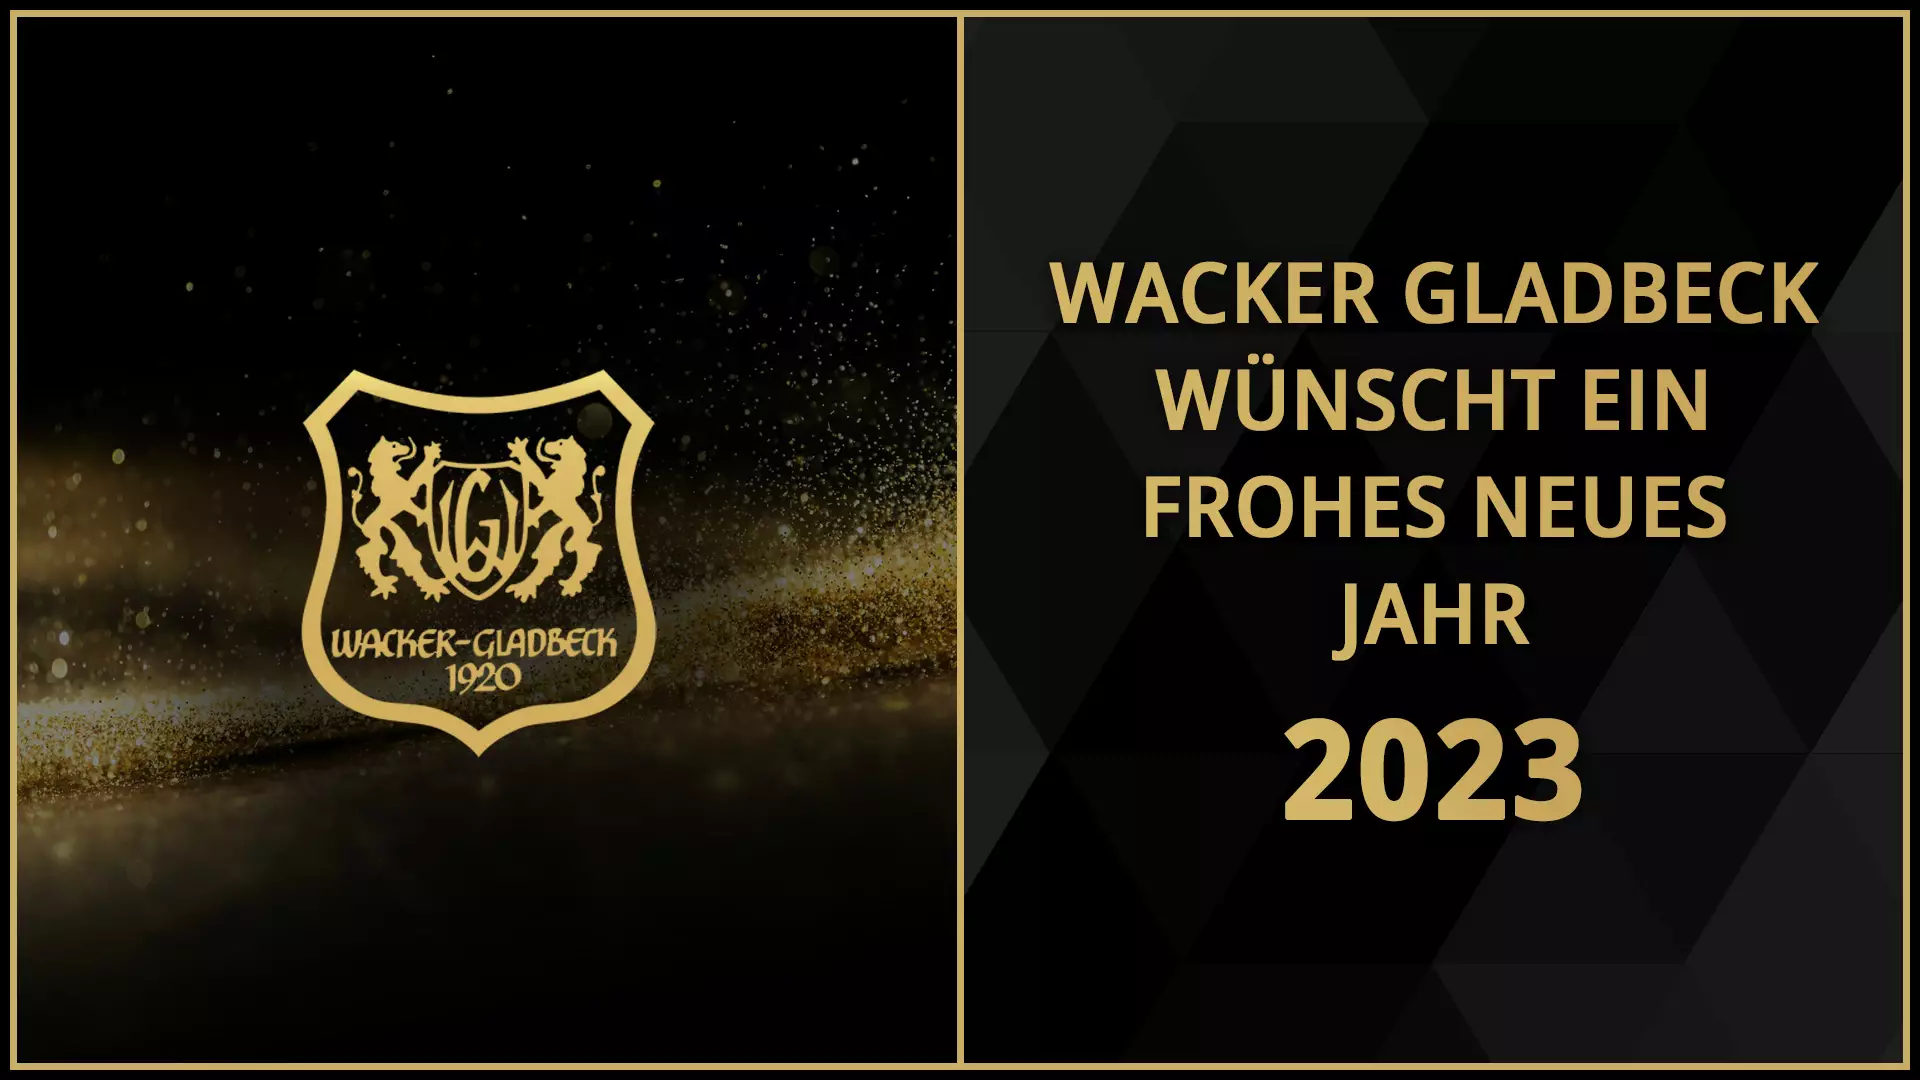 Wacker Gladbeck wünscht ein frohes neues Jahr 2023 - Wacker Gladbeck